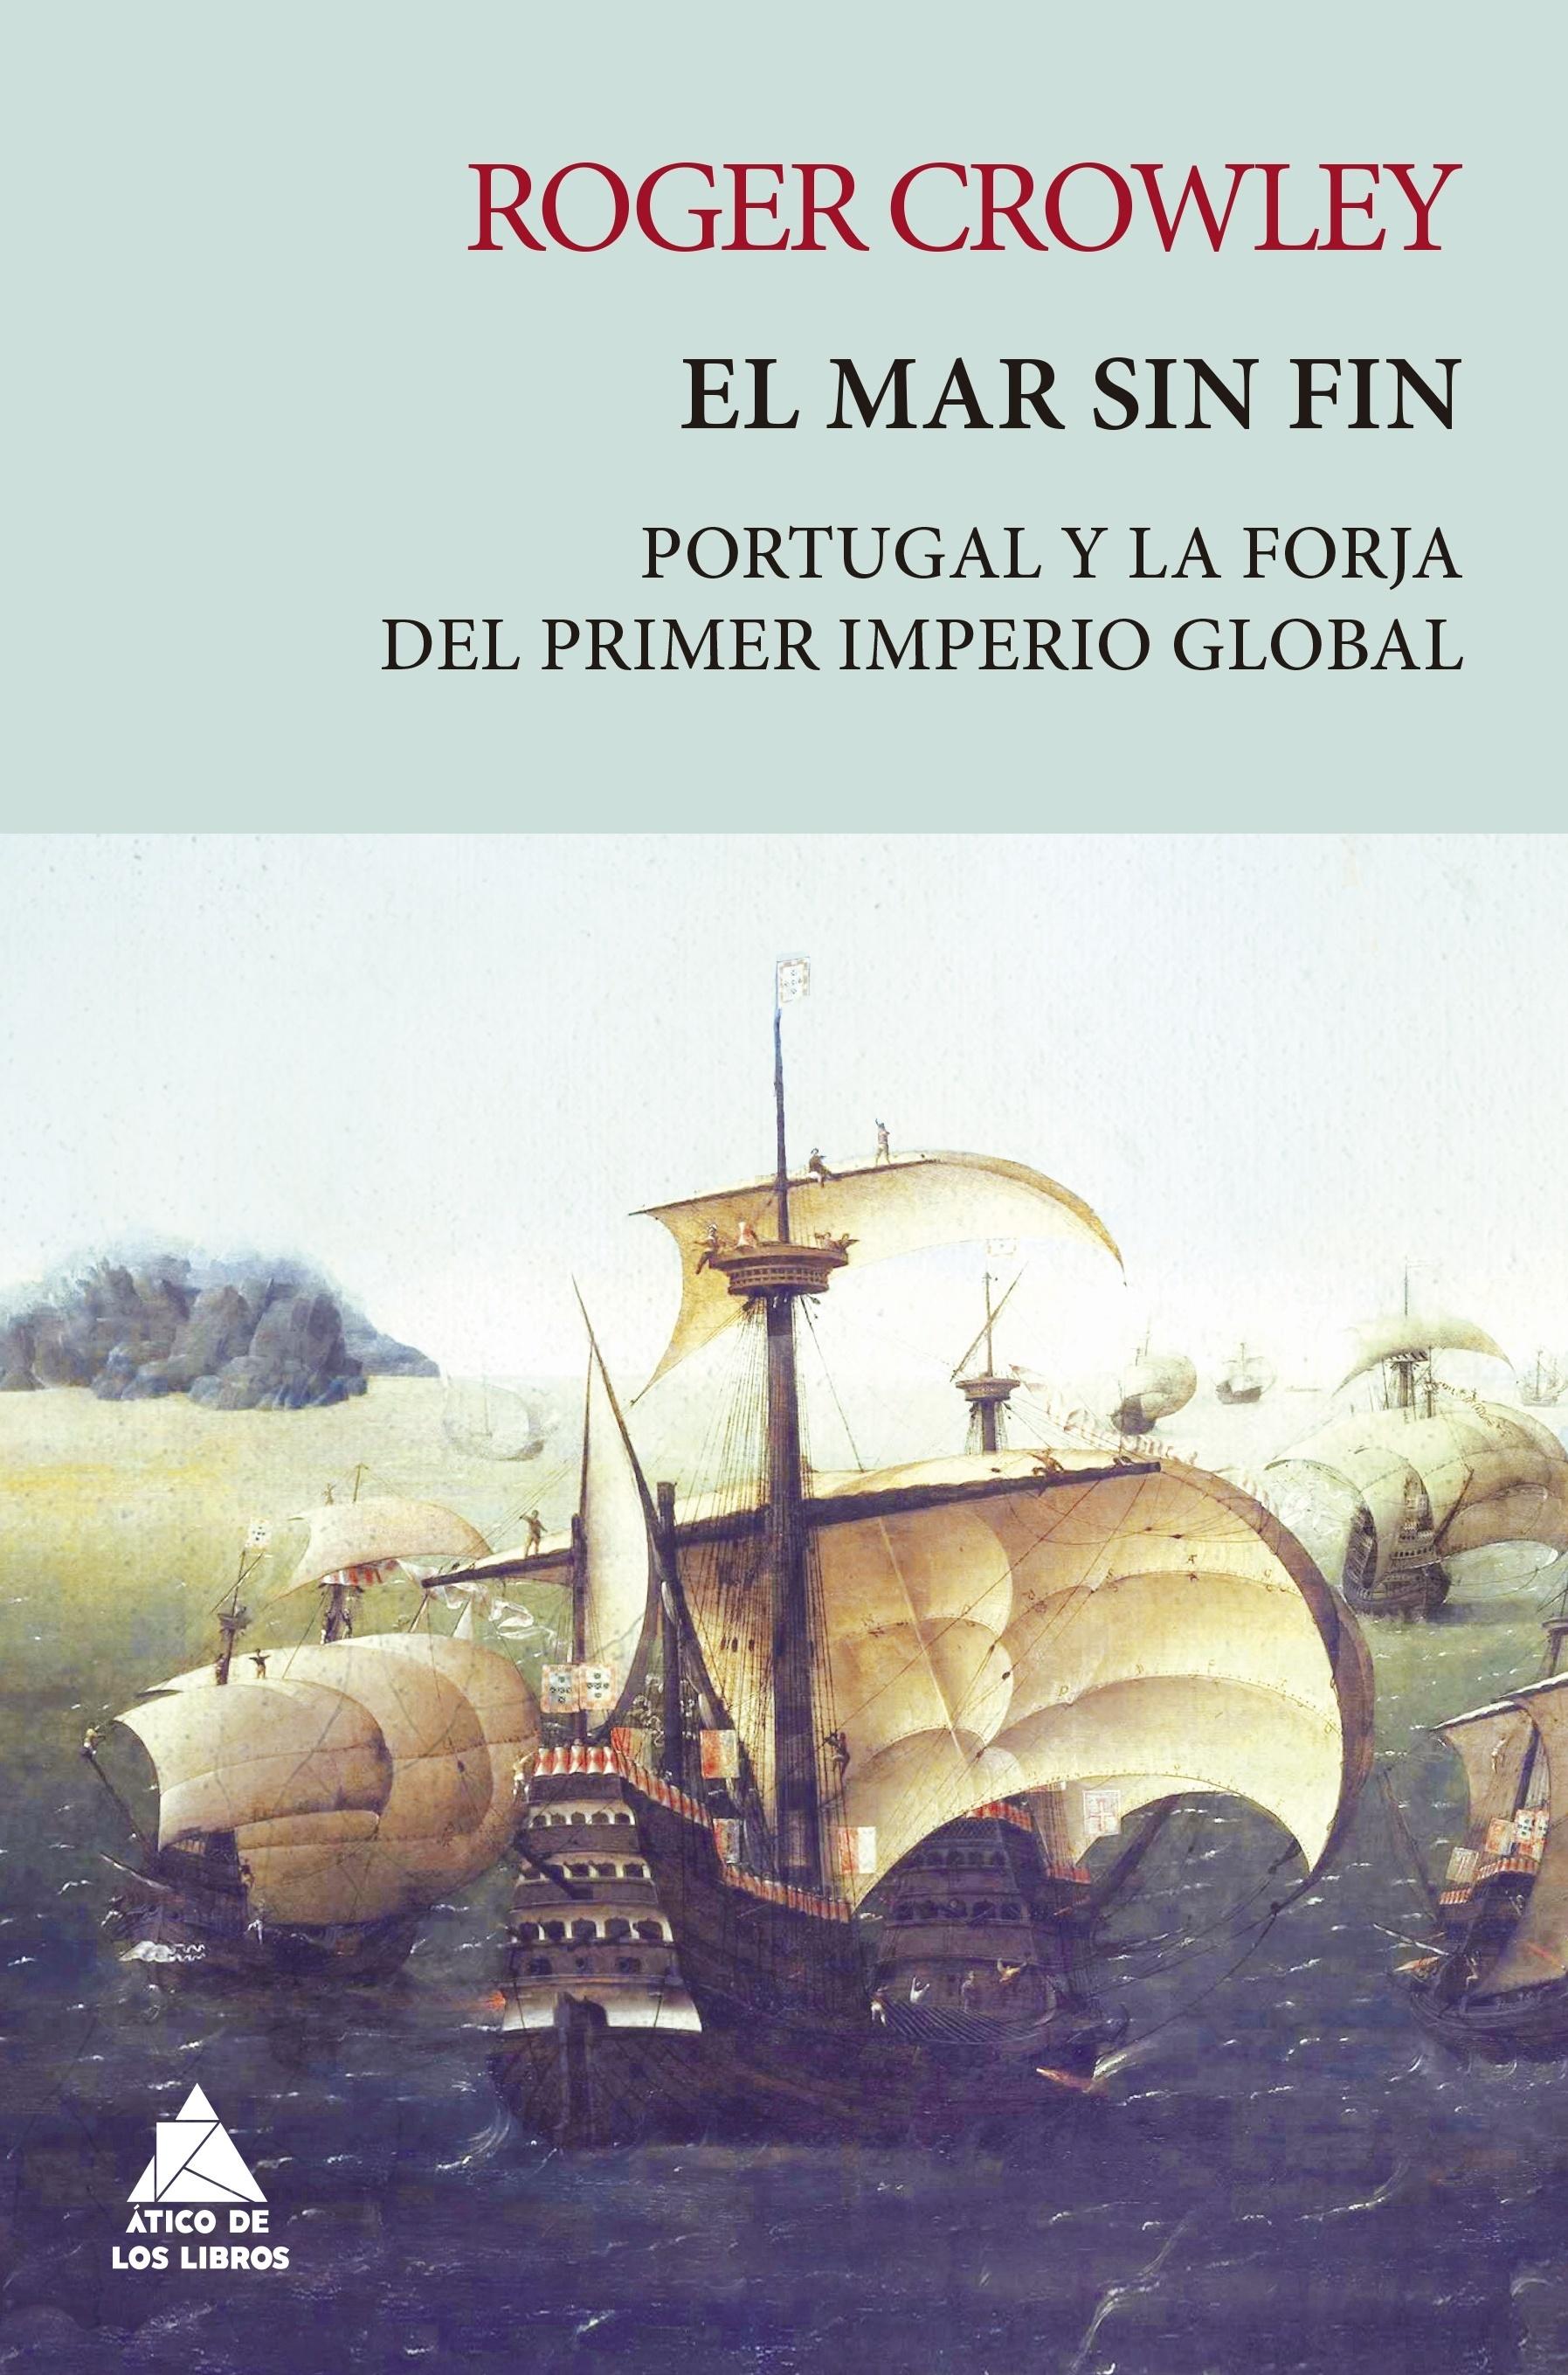 El mar sin fin "Portugal y la forja del primer imperio global"